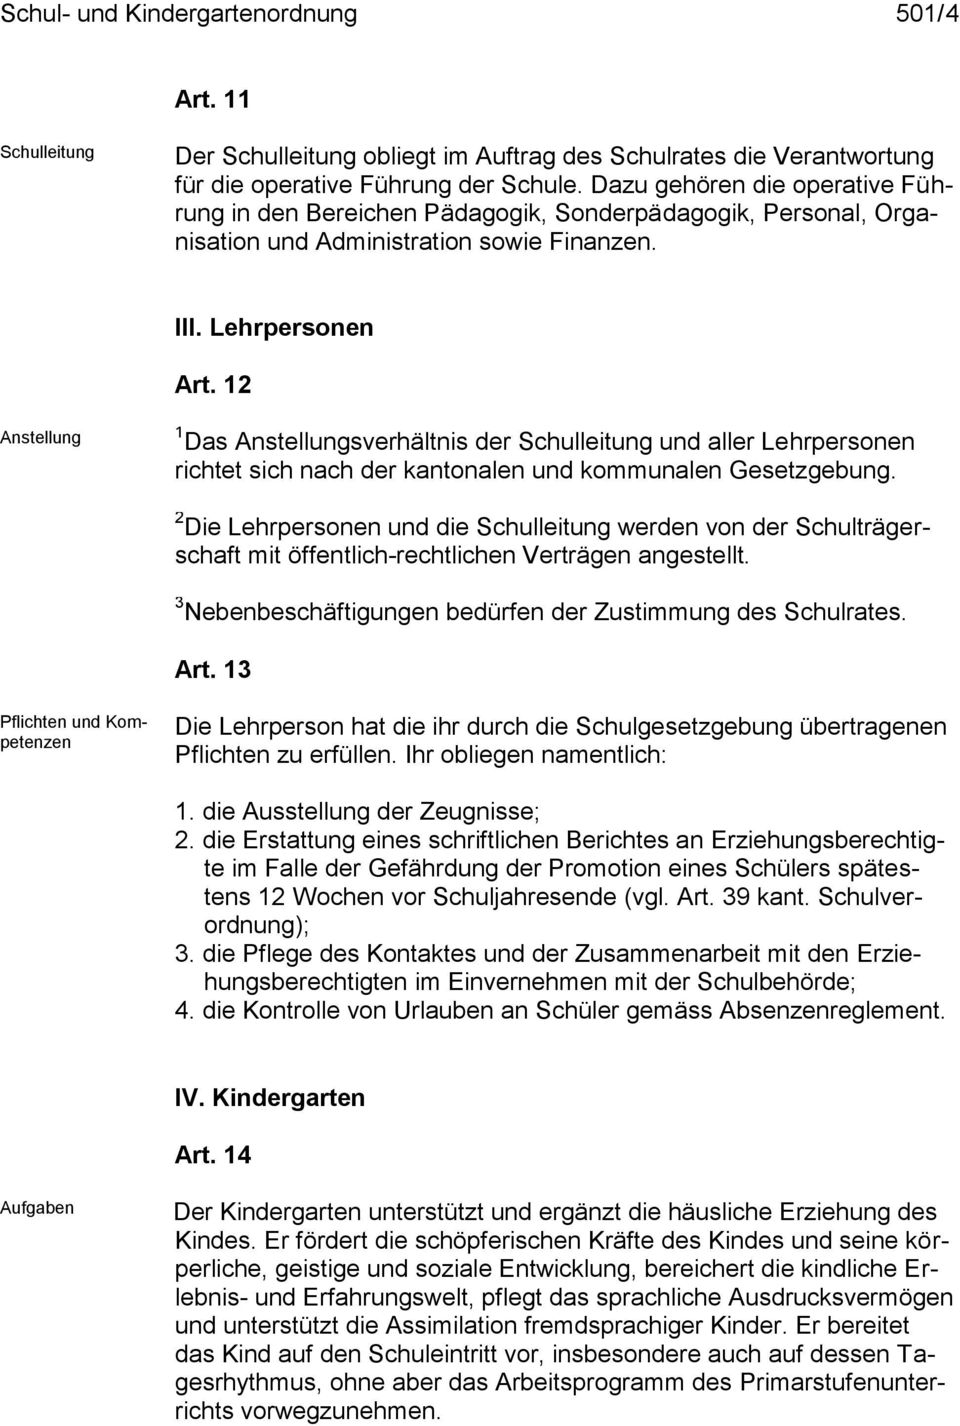 12 Anstellung 1 Das Anstellungsverhältnis der Schulleitung und aller Lehrpersonen richtet sich nach der kantonalen und kommunalen Gesetzgebung.